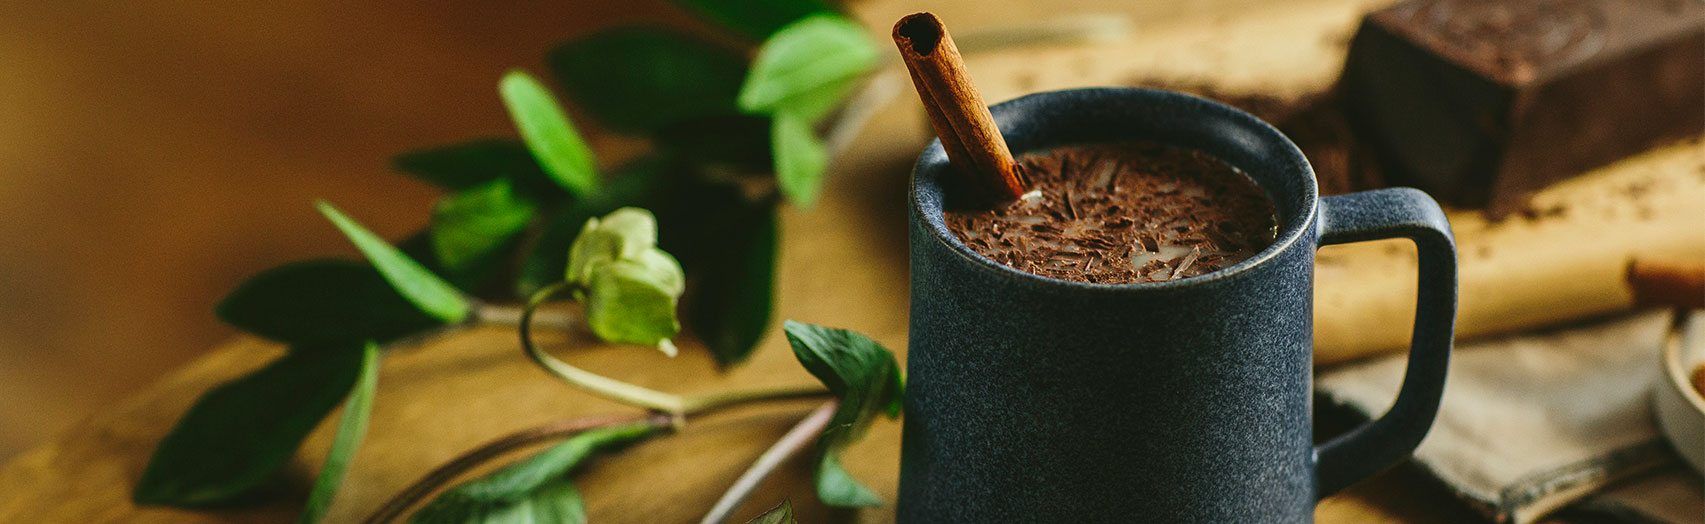 Stress Ease Hot Cocoa Medicinals Organic Wellness Teas